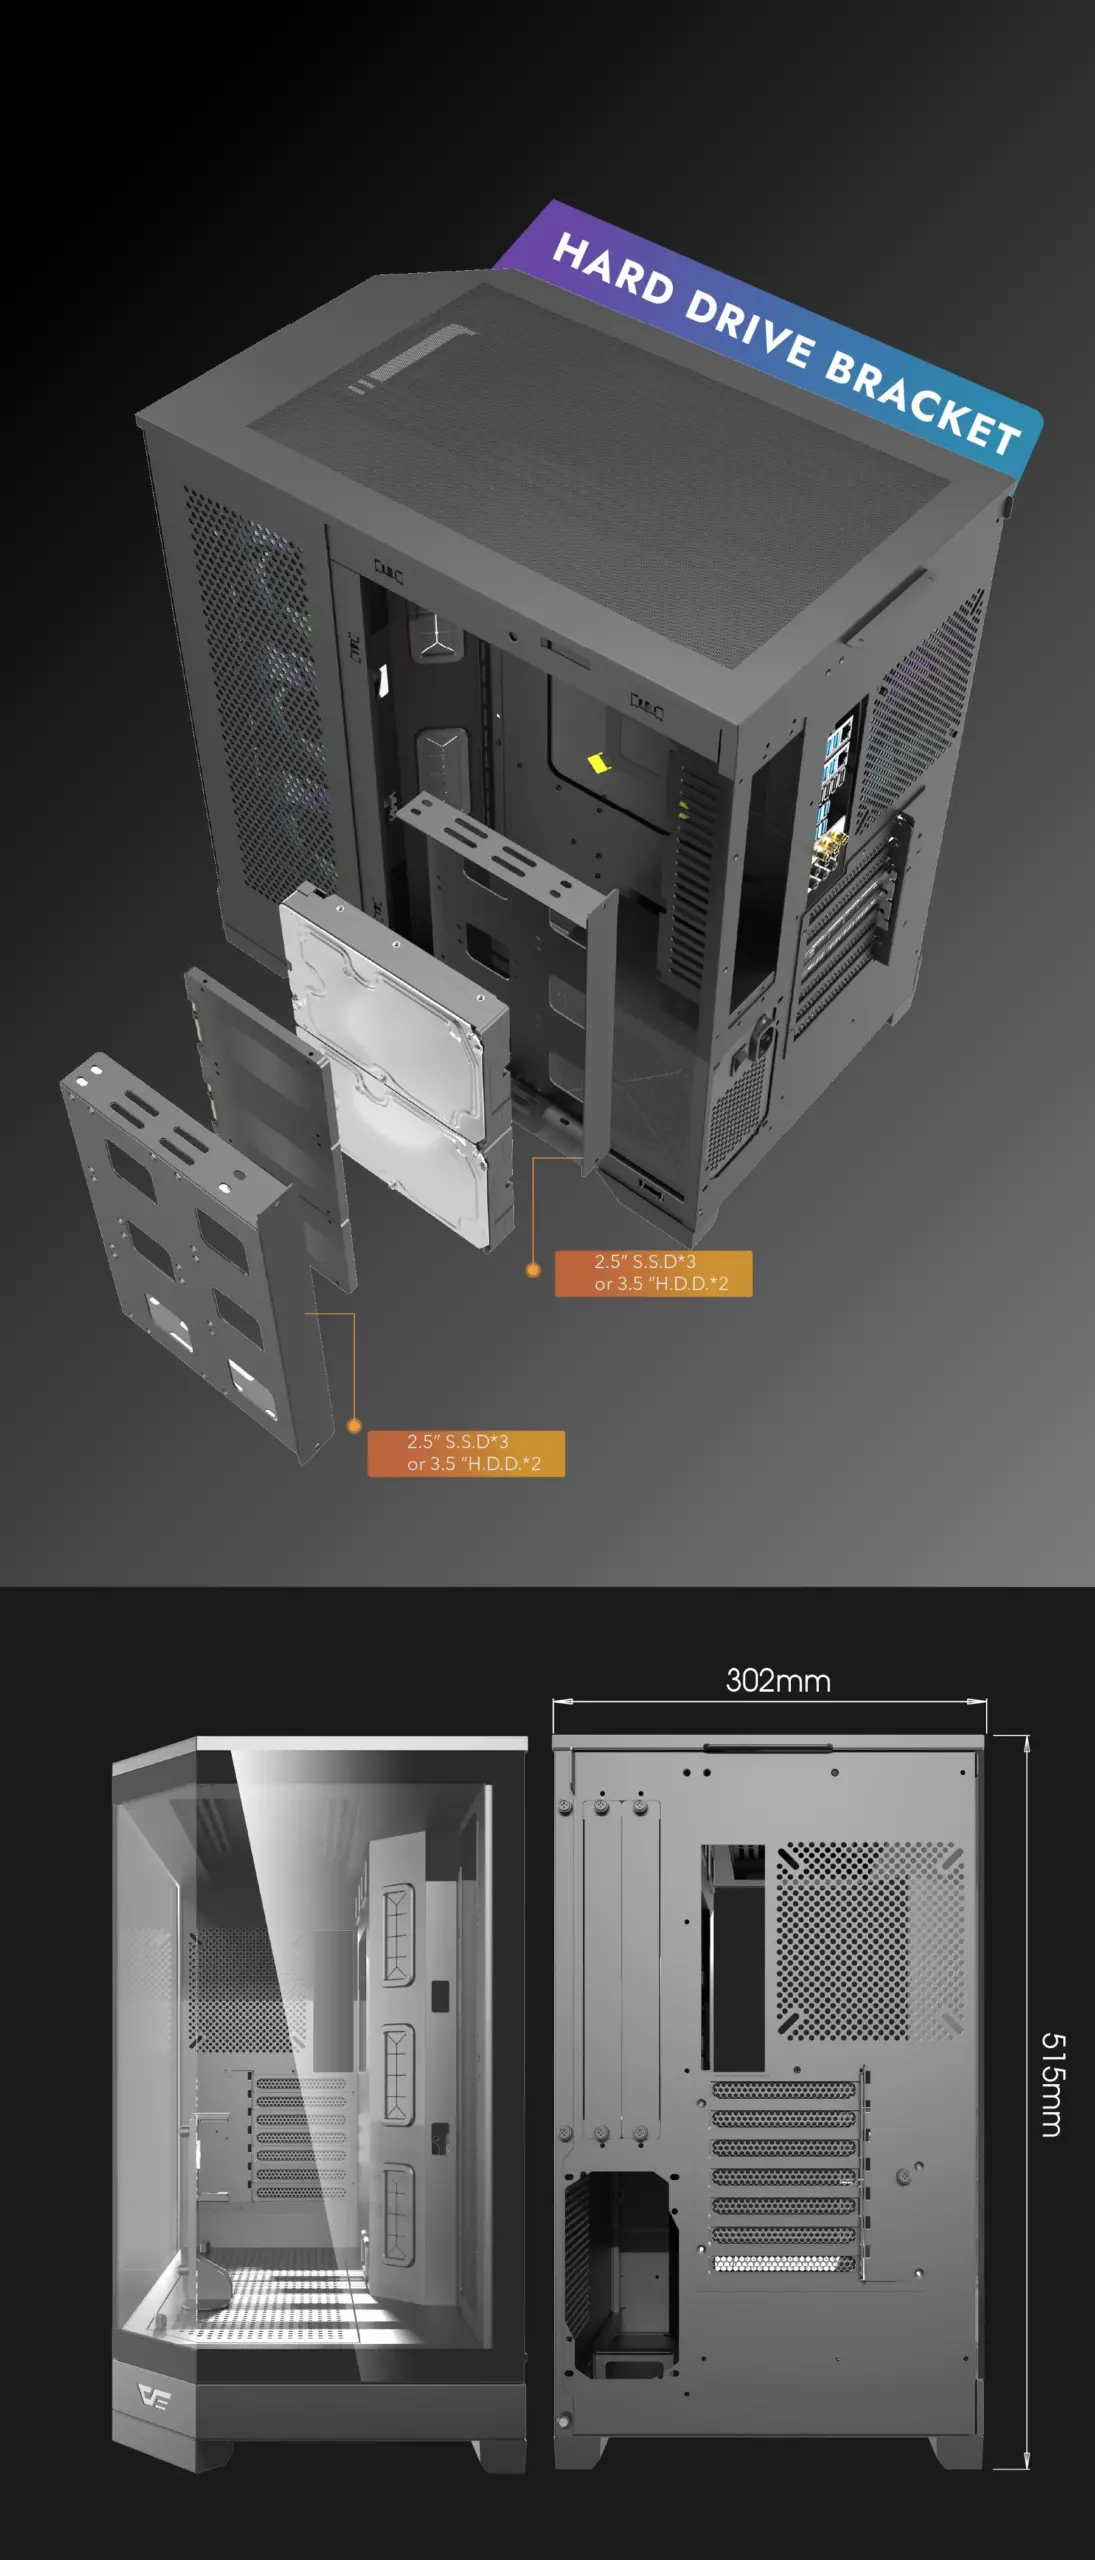 darkFlash-DQX90-LUXURY-Gaming-Desktop-PC-Mid-Tower-Gaming-Case